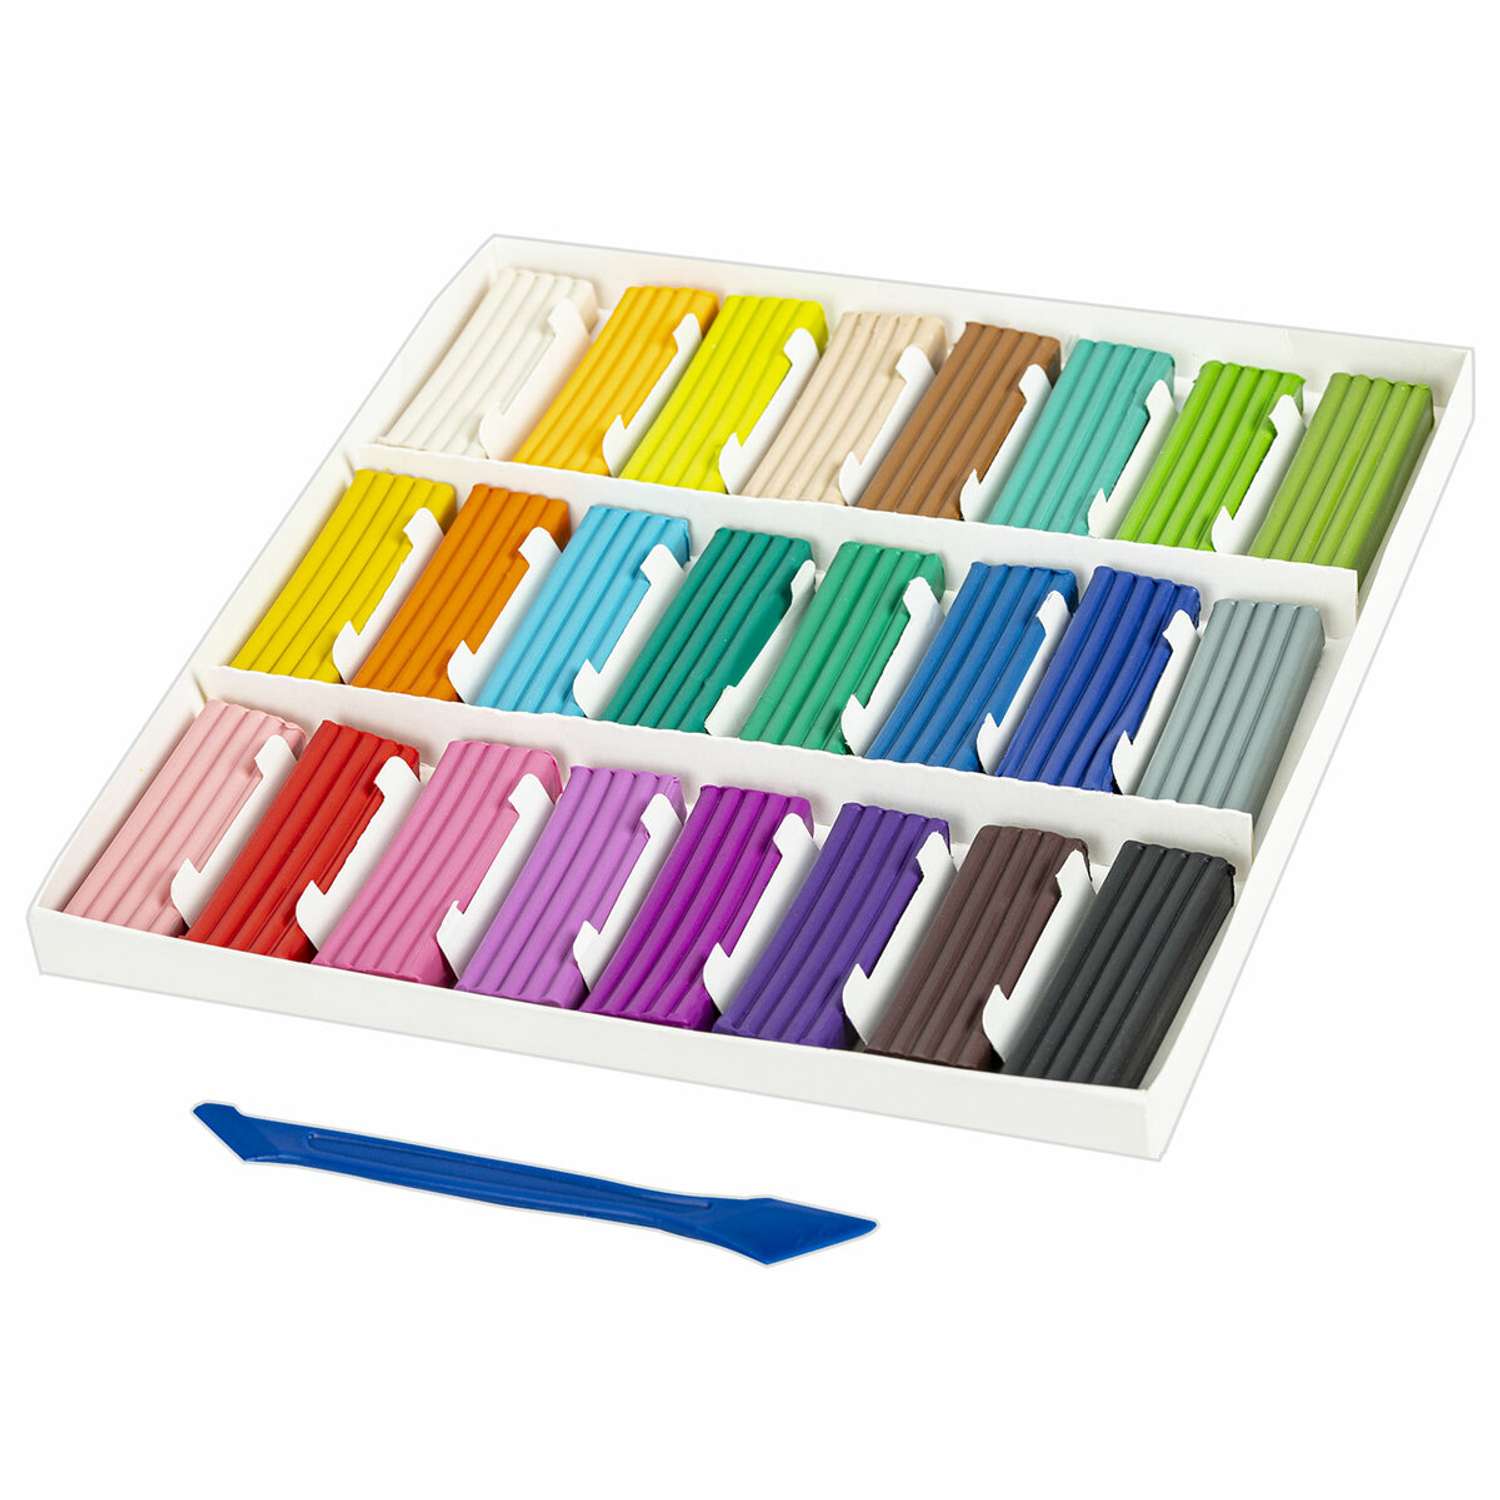 Пластилин классический Brauberg для лепки для детей 2 набора по 24 цвета - фото 2